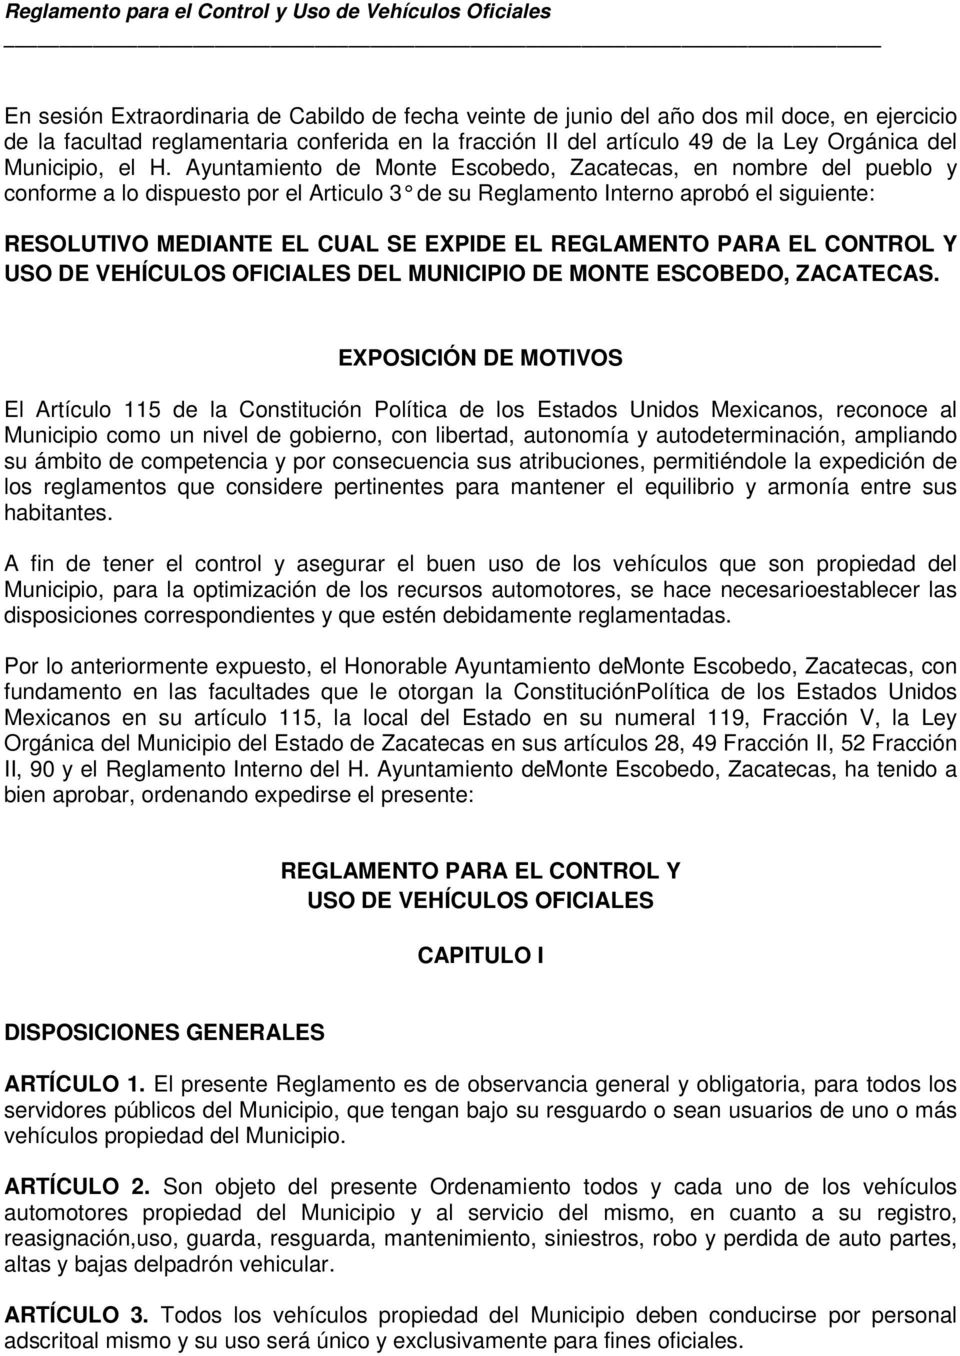 Ayuntamiento de Monte Escobedo, Zacatecas, en nombre del pueblo y conforme a lo dispuesto por el Articulo 3 de su Re glamento Interno aprobó el siguiente: RESOLUTIVO MEDIANTE EL CUAL SE EXPIDE EL